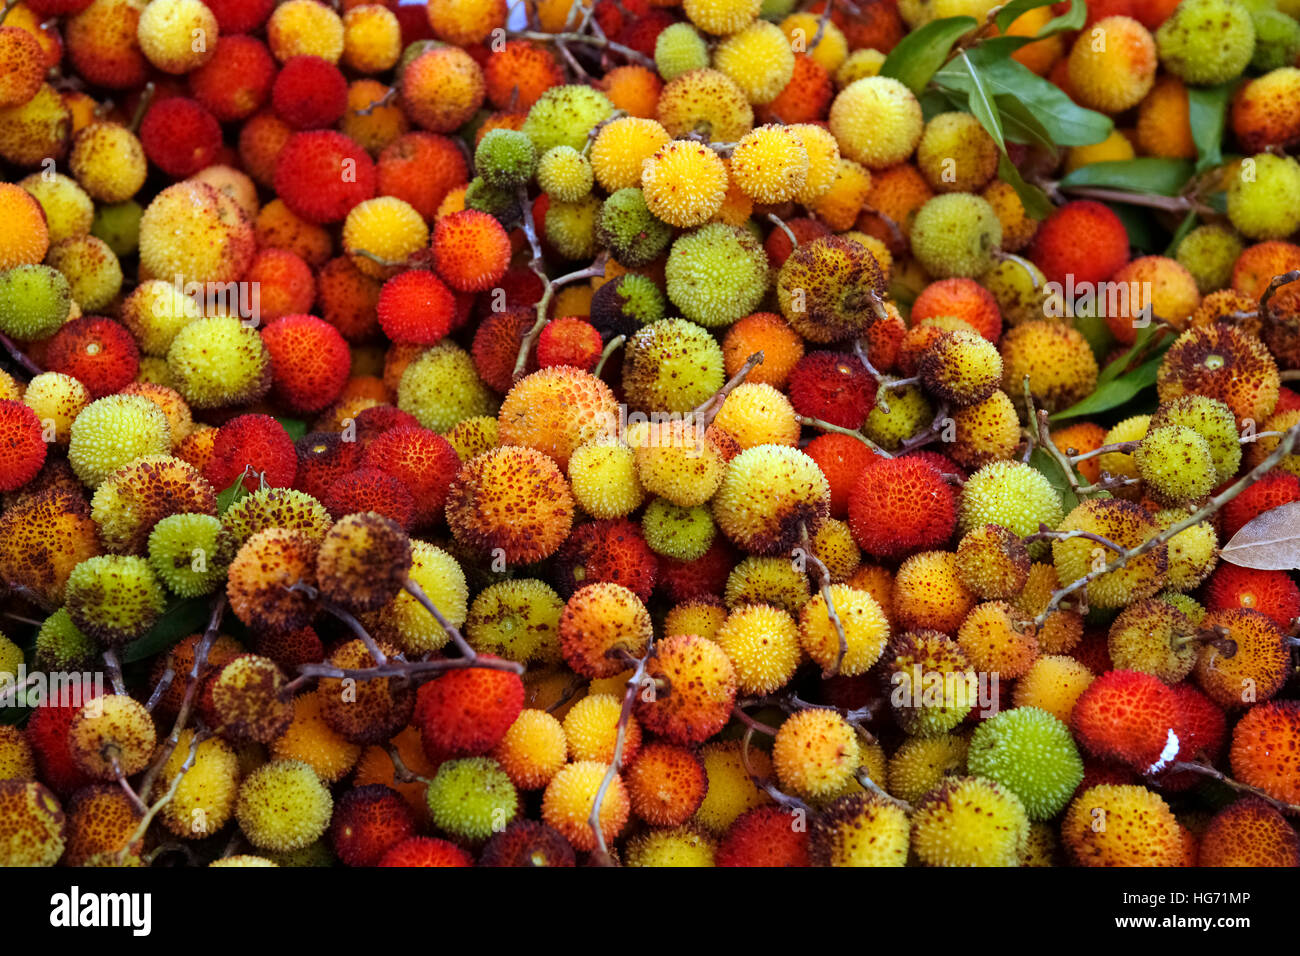 Italy Casola Valsenio Festa dei frutti dimenticati arbutus Stock Photo -  Alamy